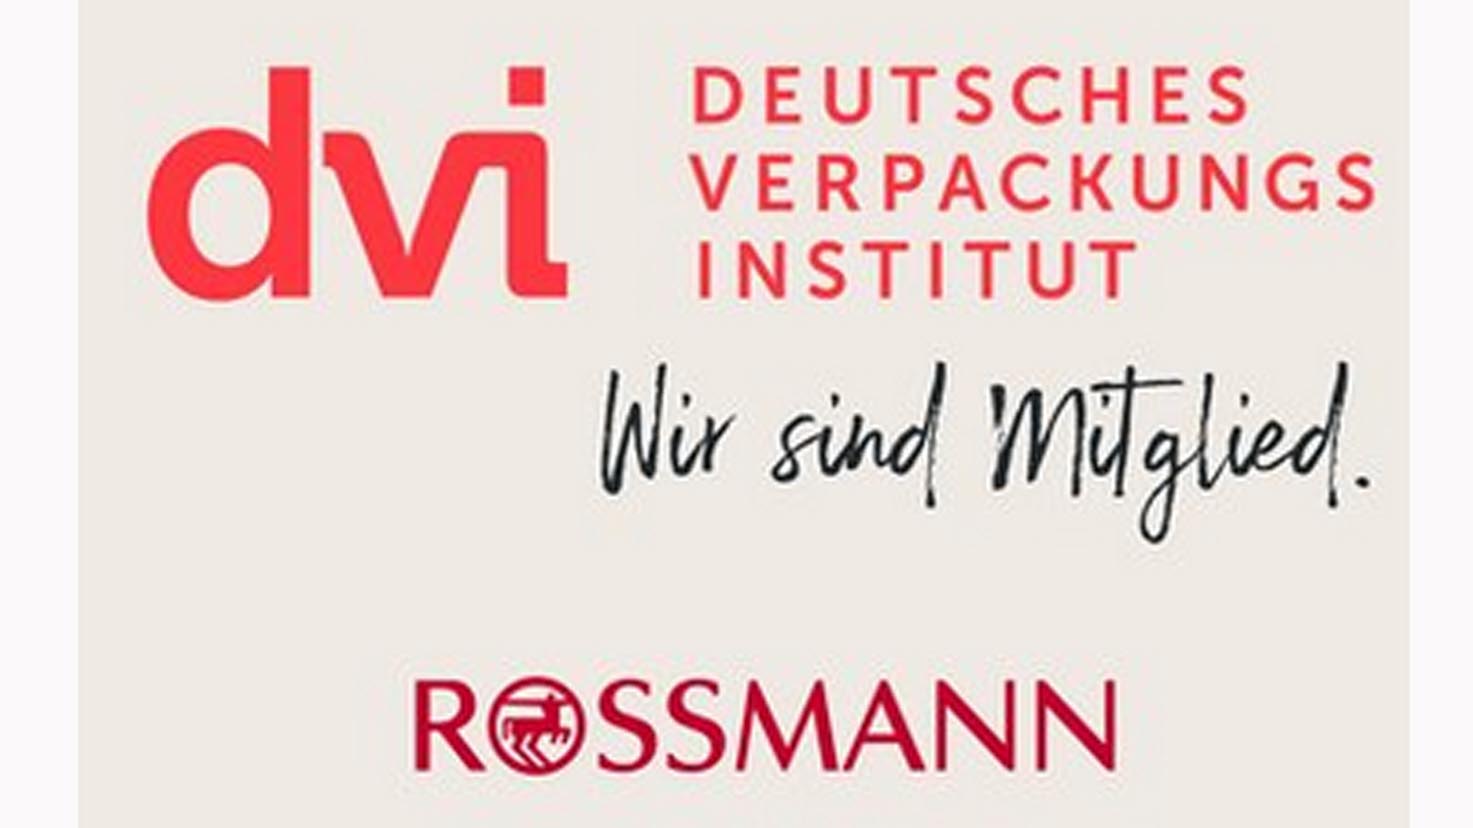 ROSSMANN-st-rkt-Kreislaufwirtschaft-Drogeriemarkt-Filialist-tritt-Deutschem-Verpackungsinstitut-bei